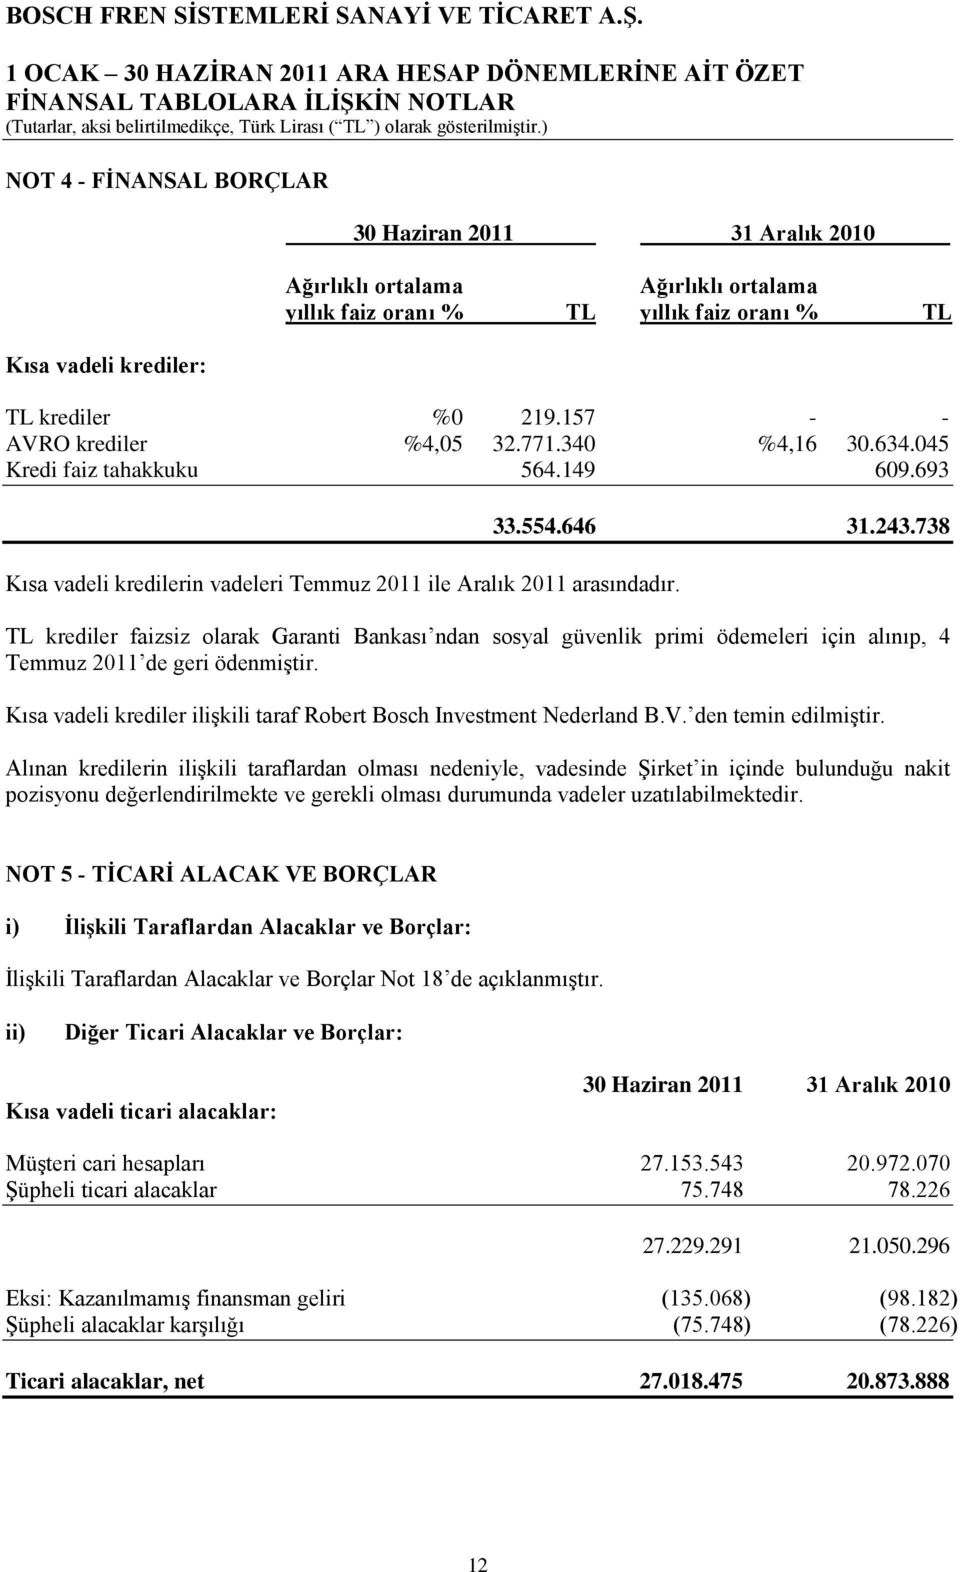 33.554.646 31.243.738 TL krediler faizsiz olarak Garanti Bankası ndan sosyal güvenlik primi ödemeleri için alınıp, 4 Temmuz 2011 de geri ödenmiştir.